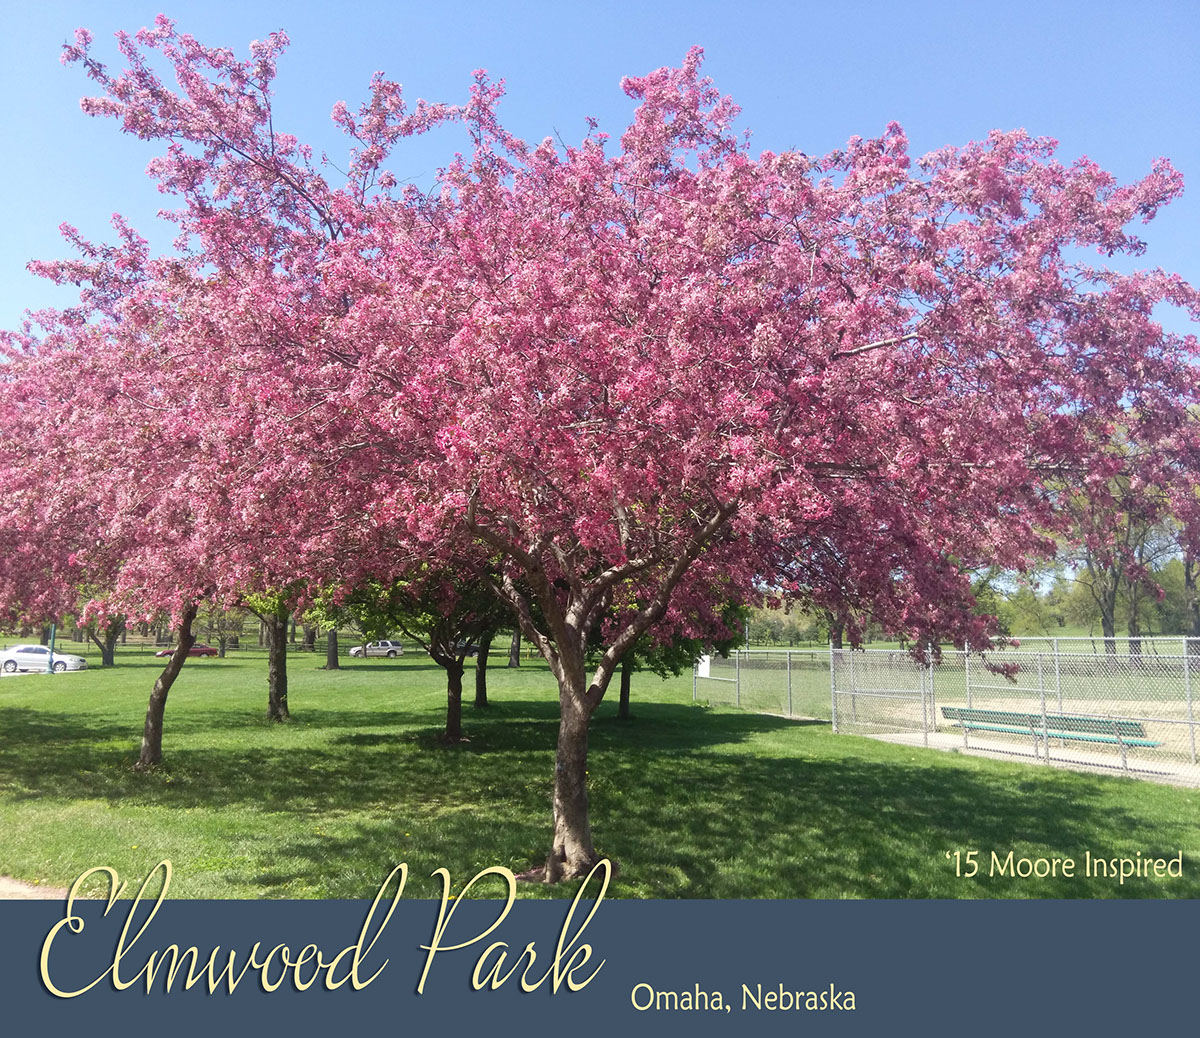 elmwood park Omaha Nebraska midtown city park picnic